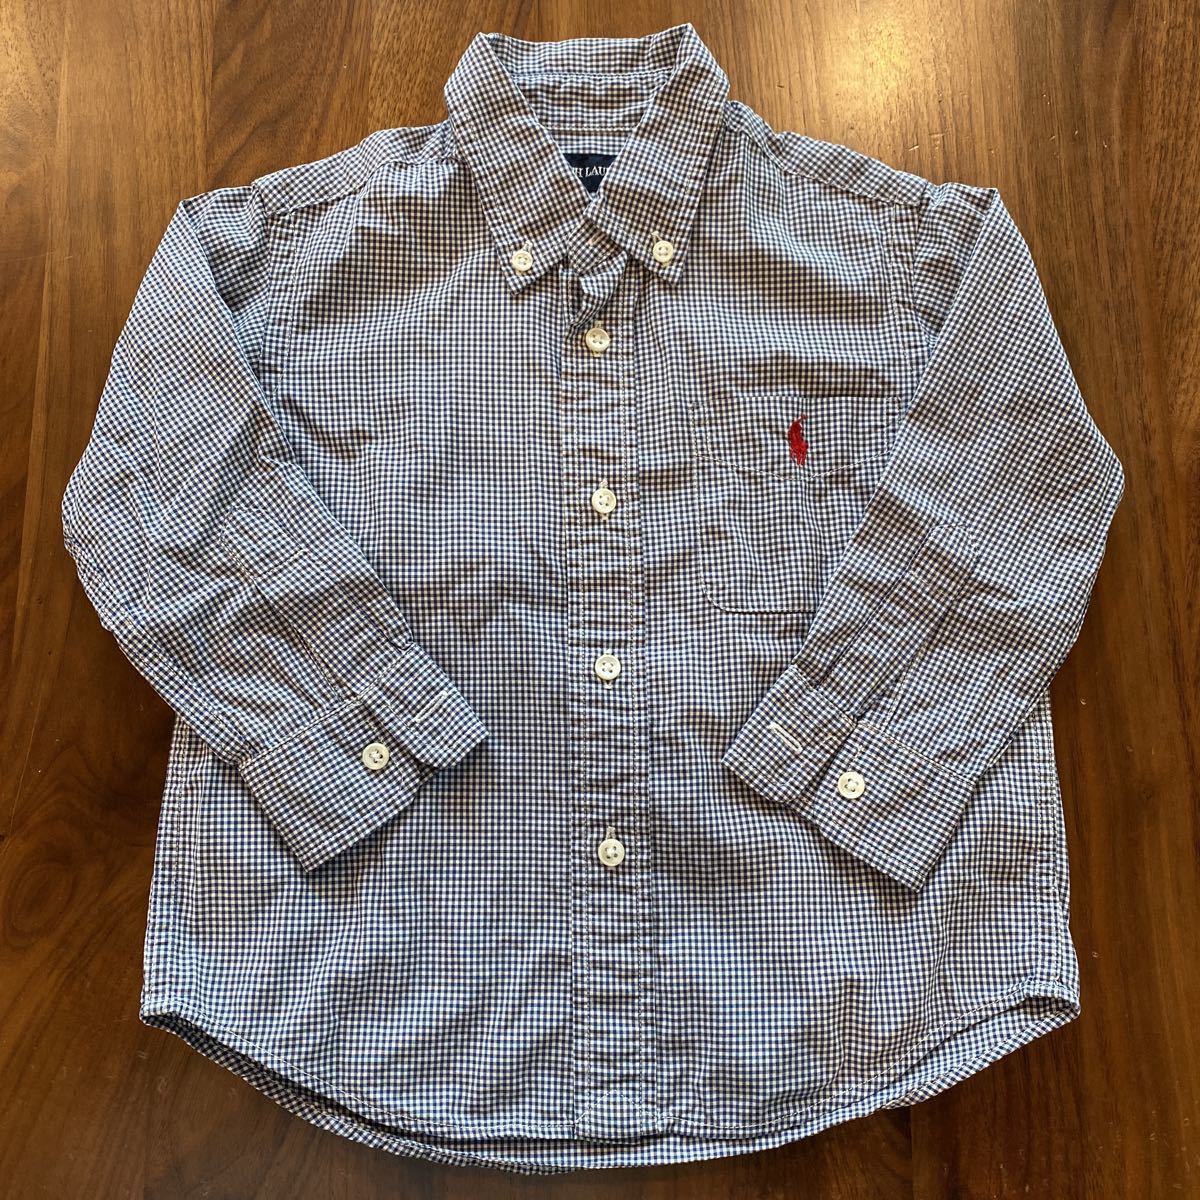  Ralph Lauren Kids long sleeve shirt button down shirt 90cm beautiful goods RALPH LAUREN check shirt 